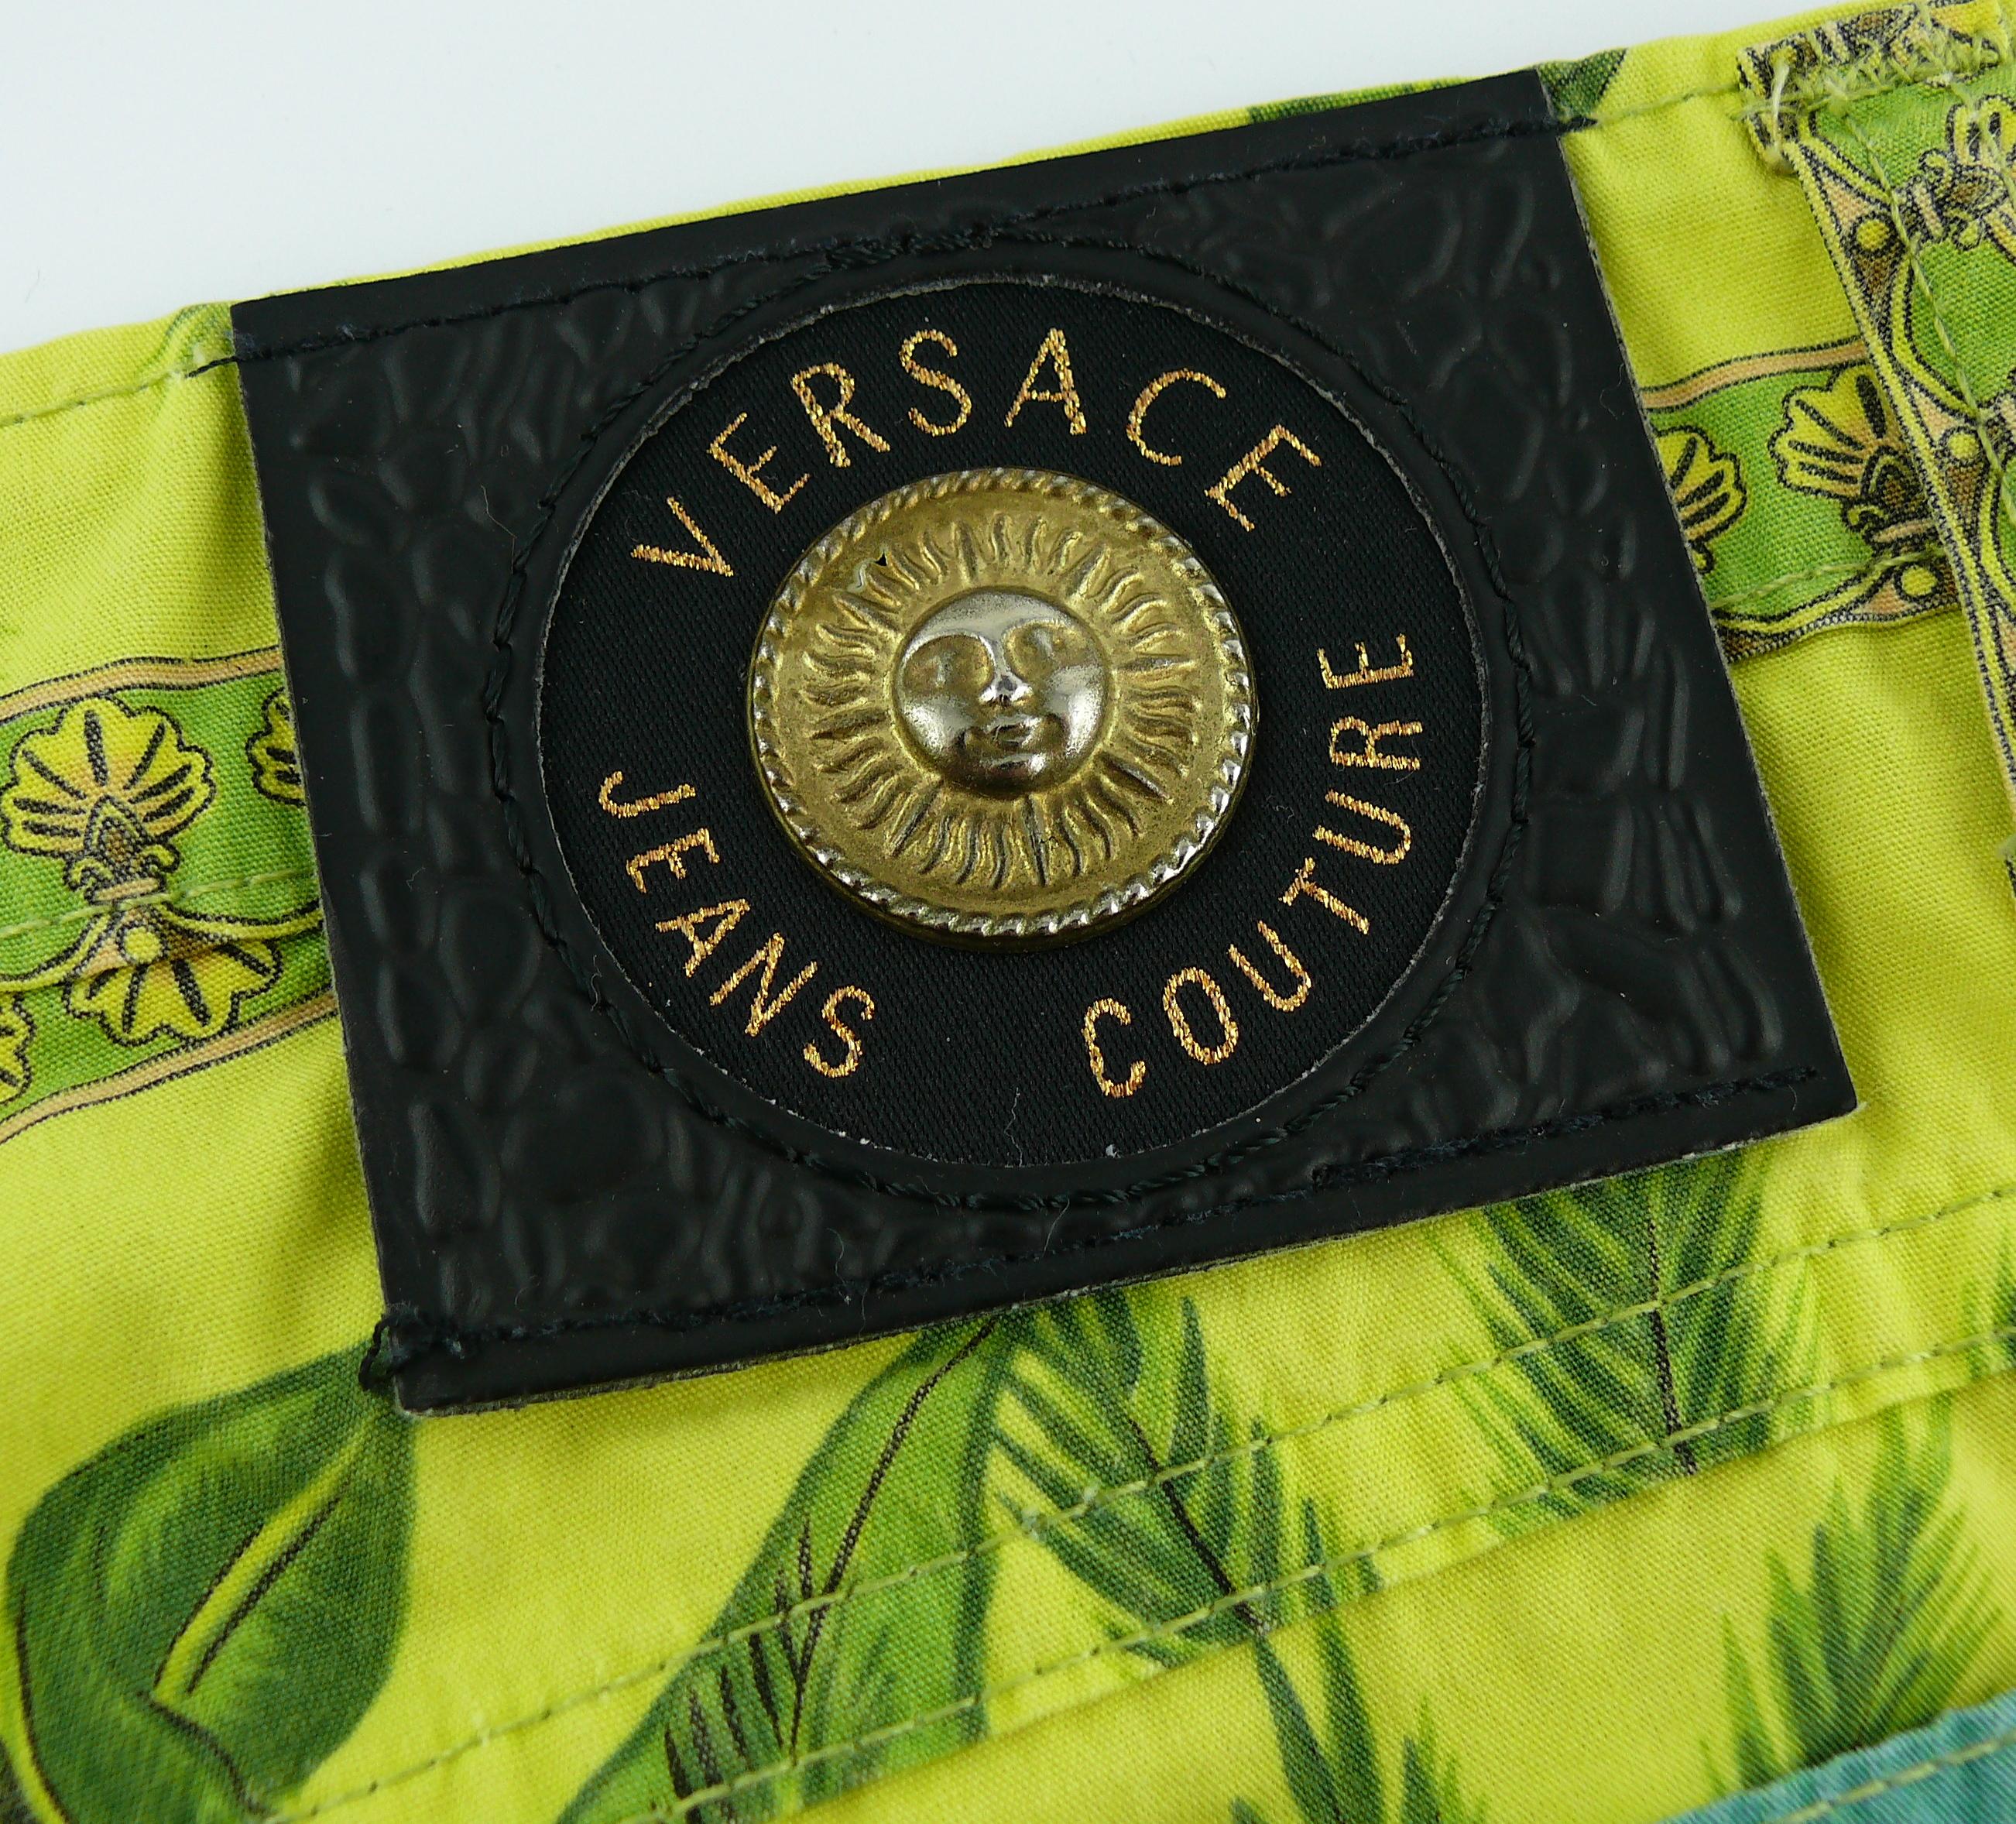 Versace Jeans Couture Vintage 1990s Tarzan Jungle Print Pants 5